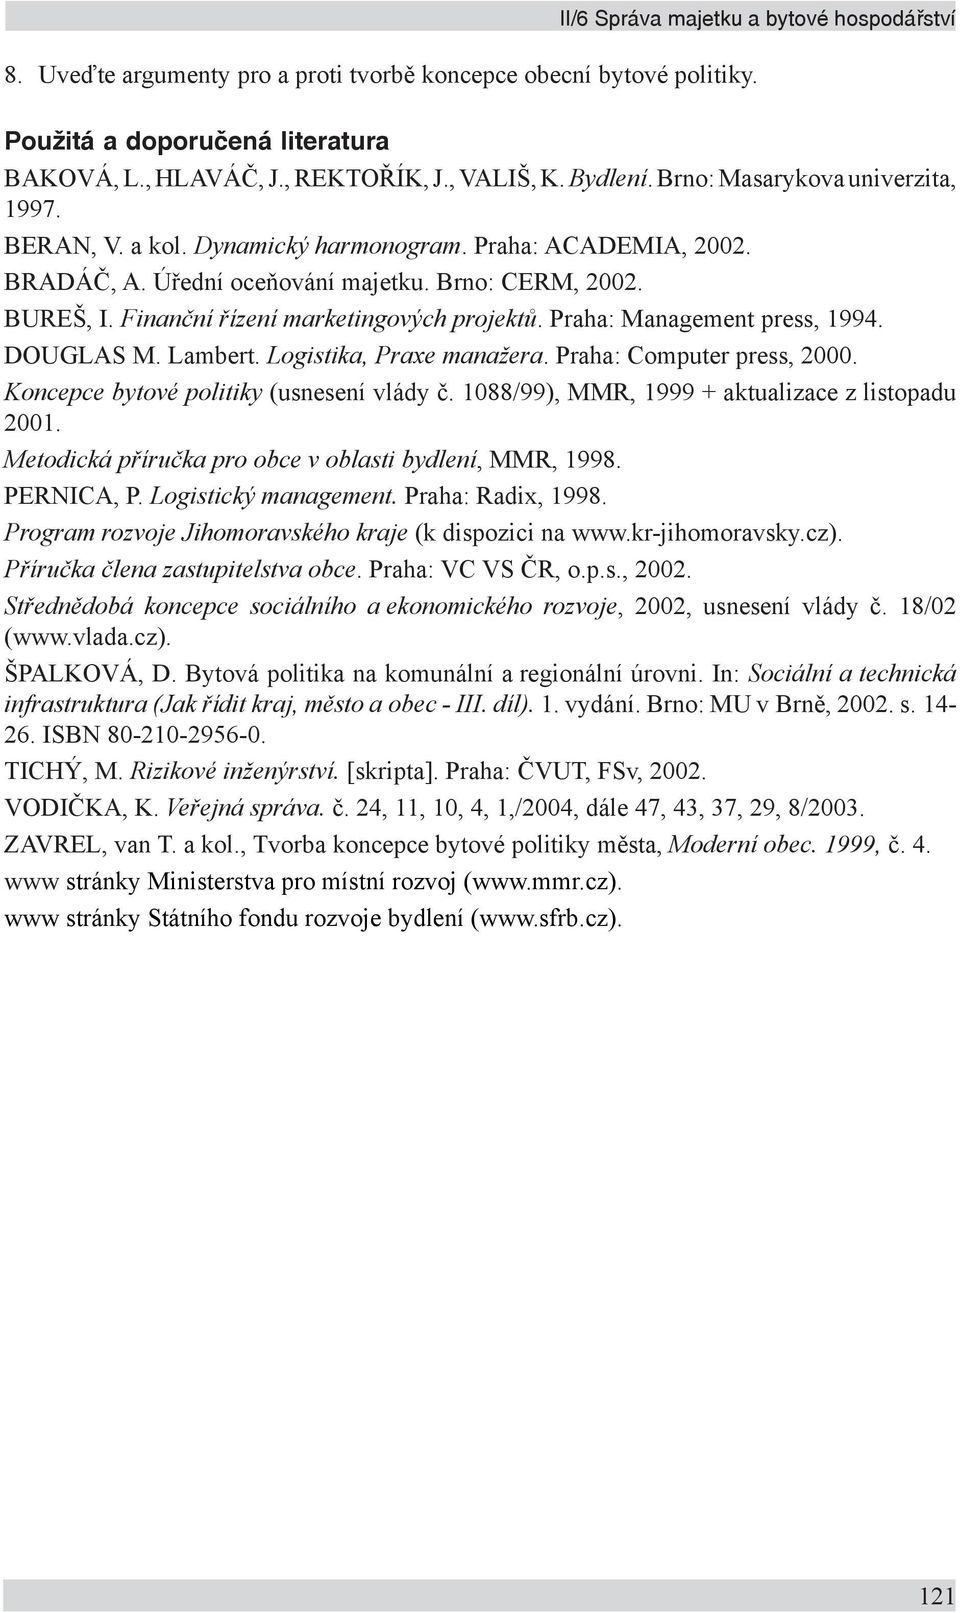 DOUGLAS M. Lambert. Logistika, Praxe manažera. Praha: Computer press, 2000. Koncepce bytové politiky (usnesení vlády č. 1088/99), MMR, 1999 + aktualizace z listopadu 2001.